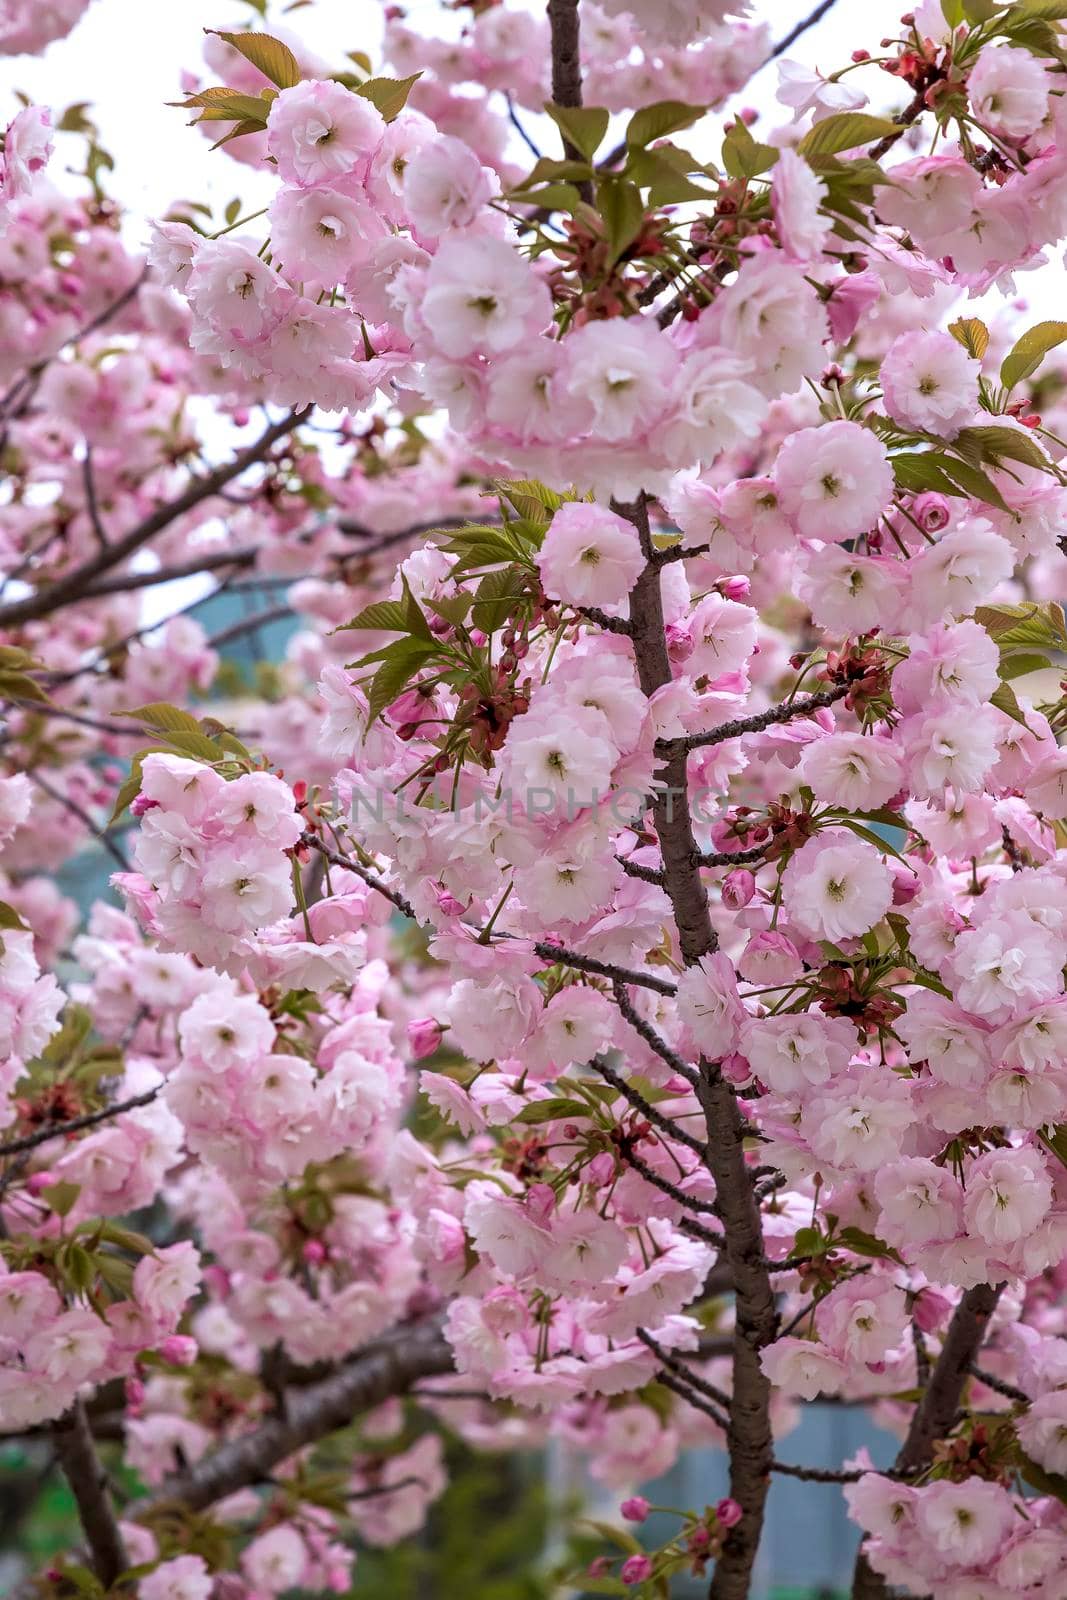 Beautiful gentle colors of Cherry blossoming tree. Sakura. Prunus serrulata. Yaezakura. Vertical view